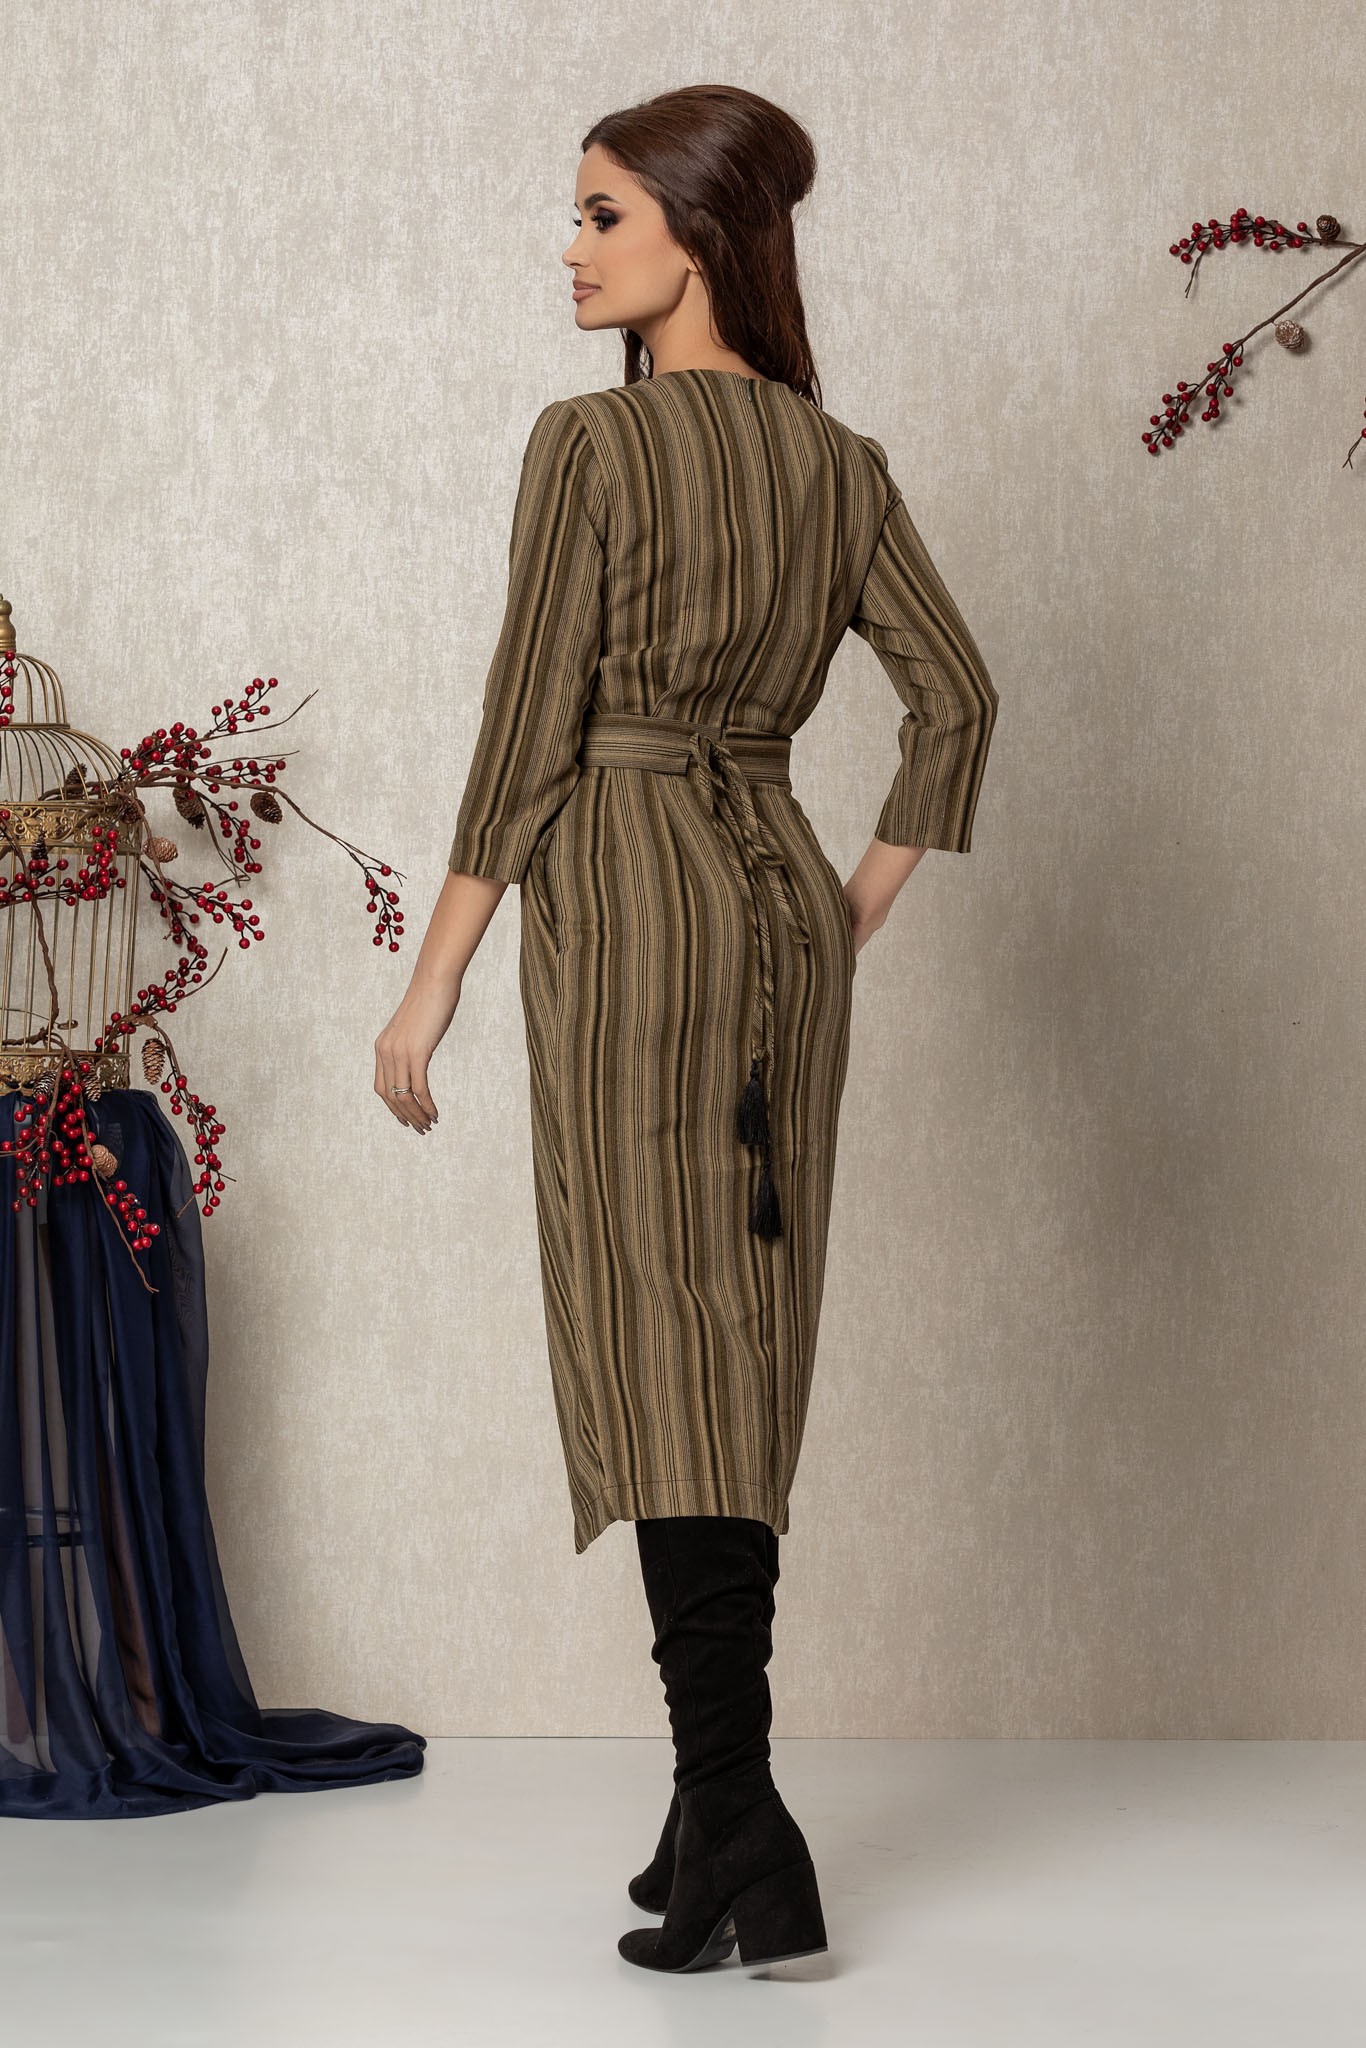 Χακί Μίντι Καθημερινό Φόρεμα Από Βελούδο Ellinor T820 2